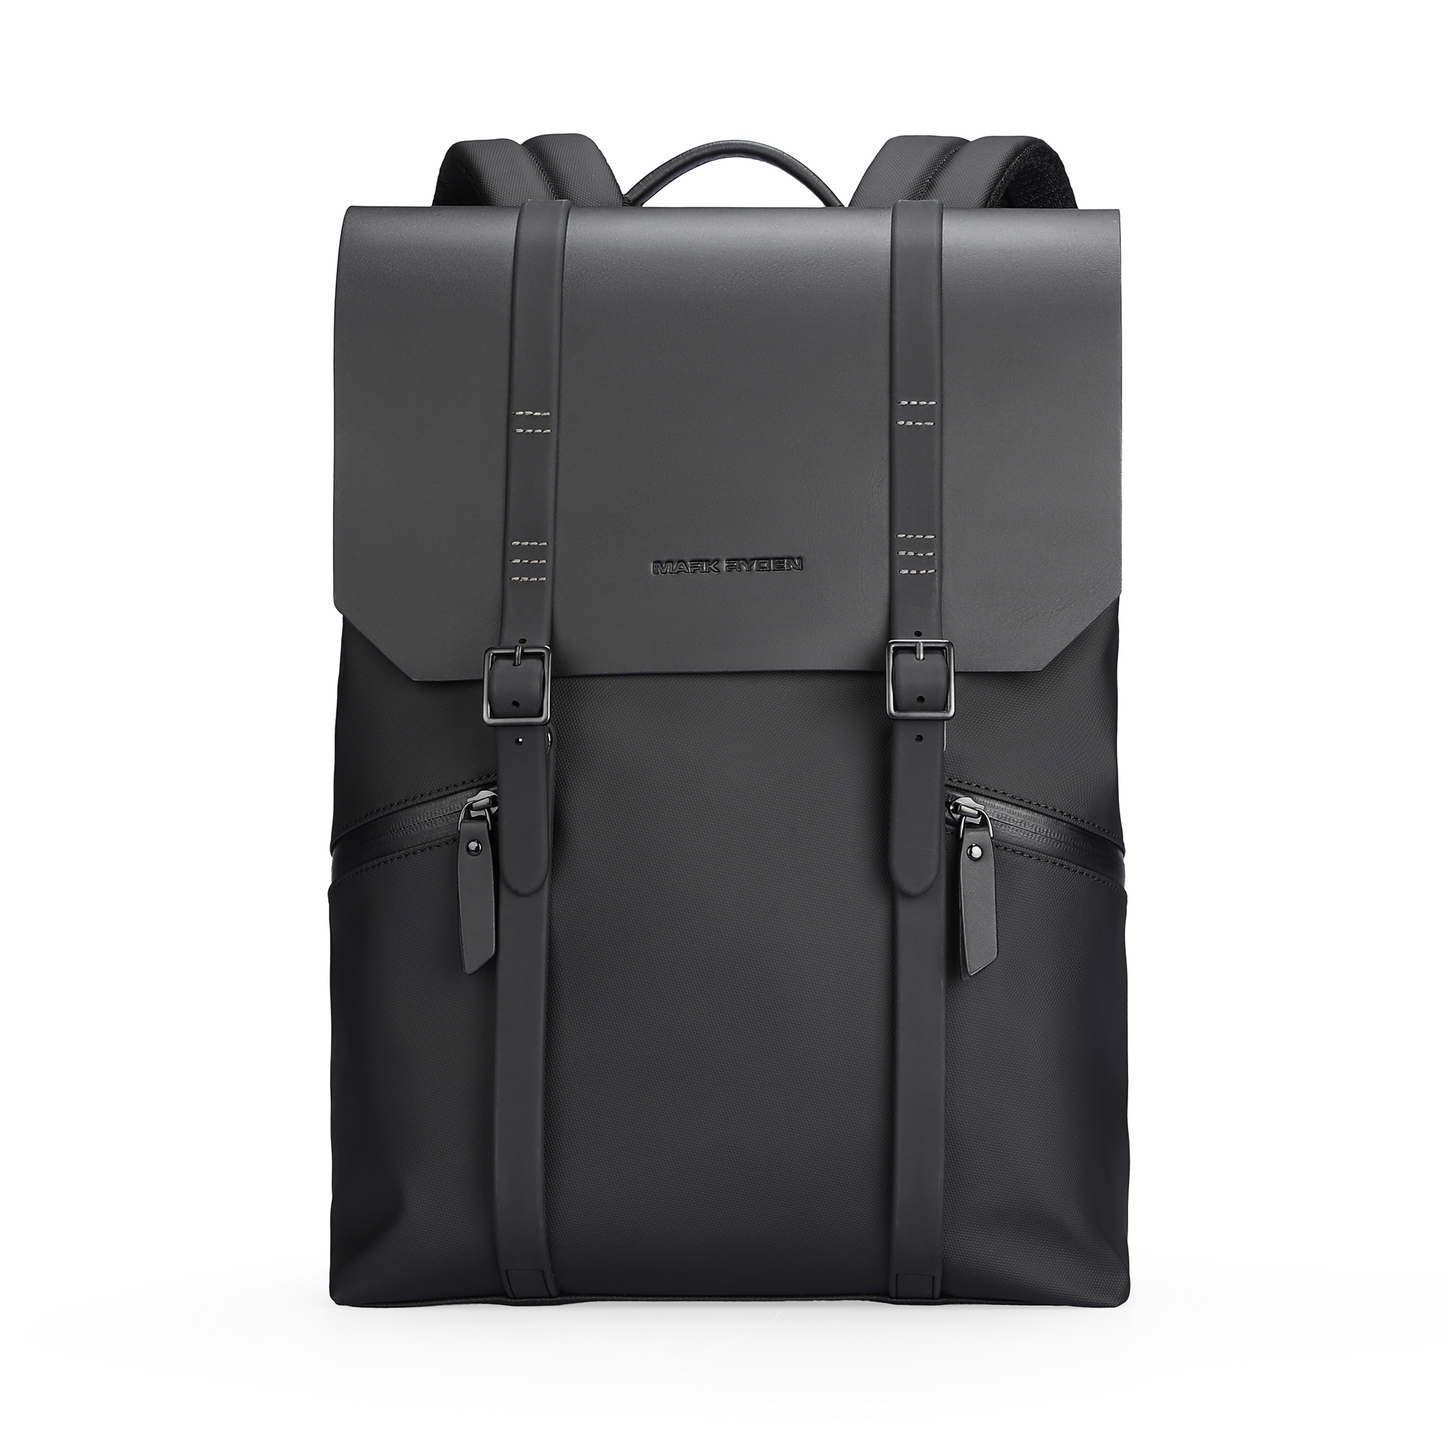 MUKE II: Classic Business Work Black Leather Backpack